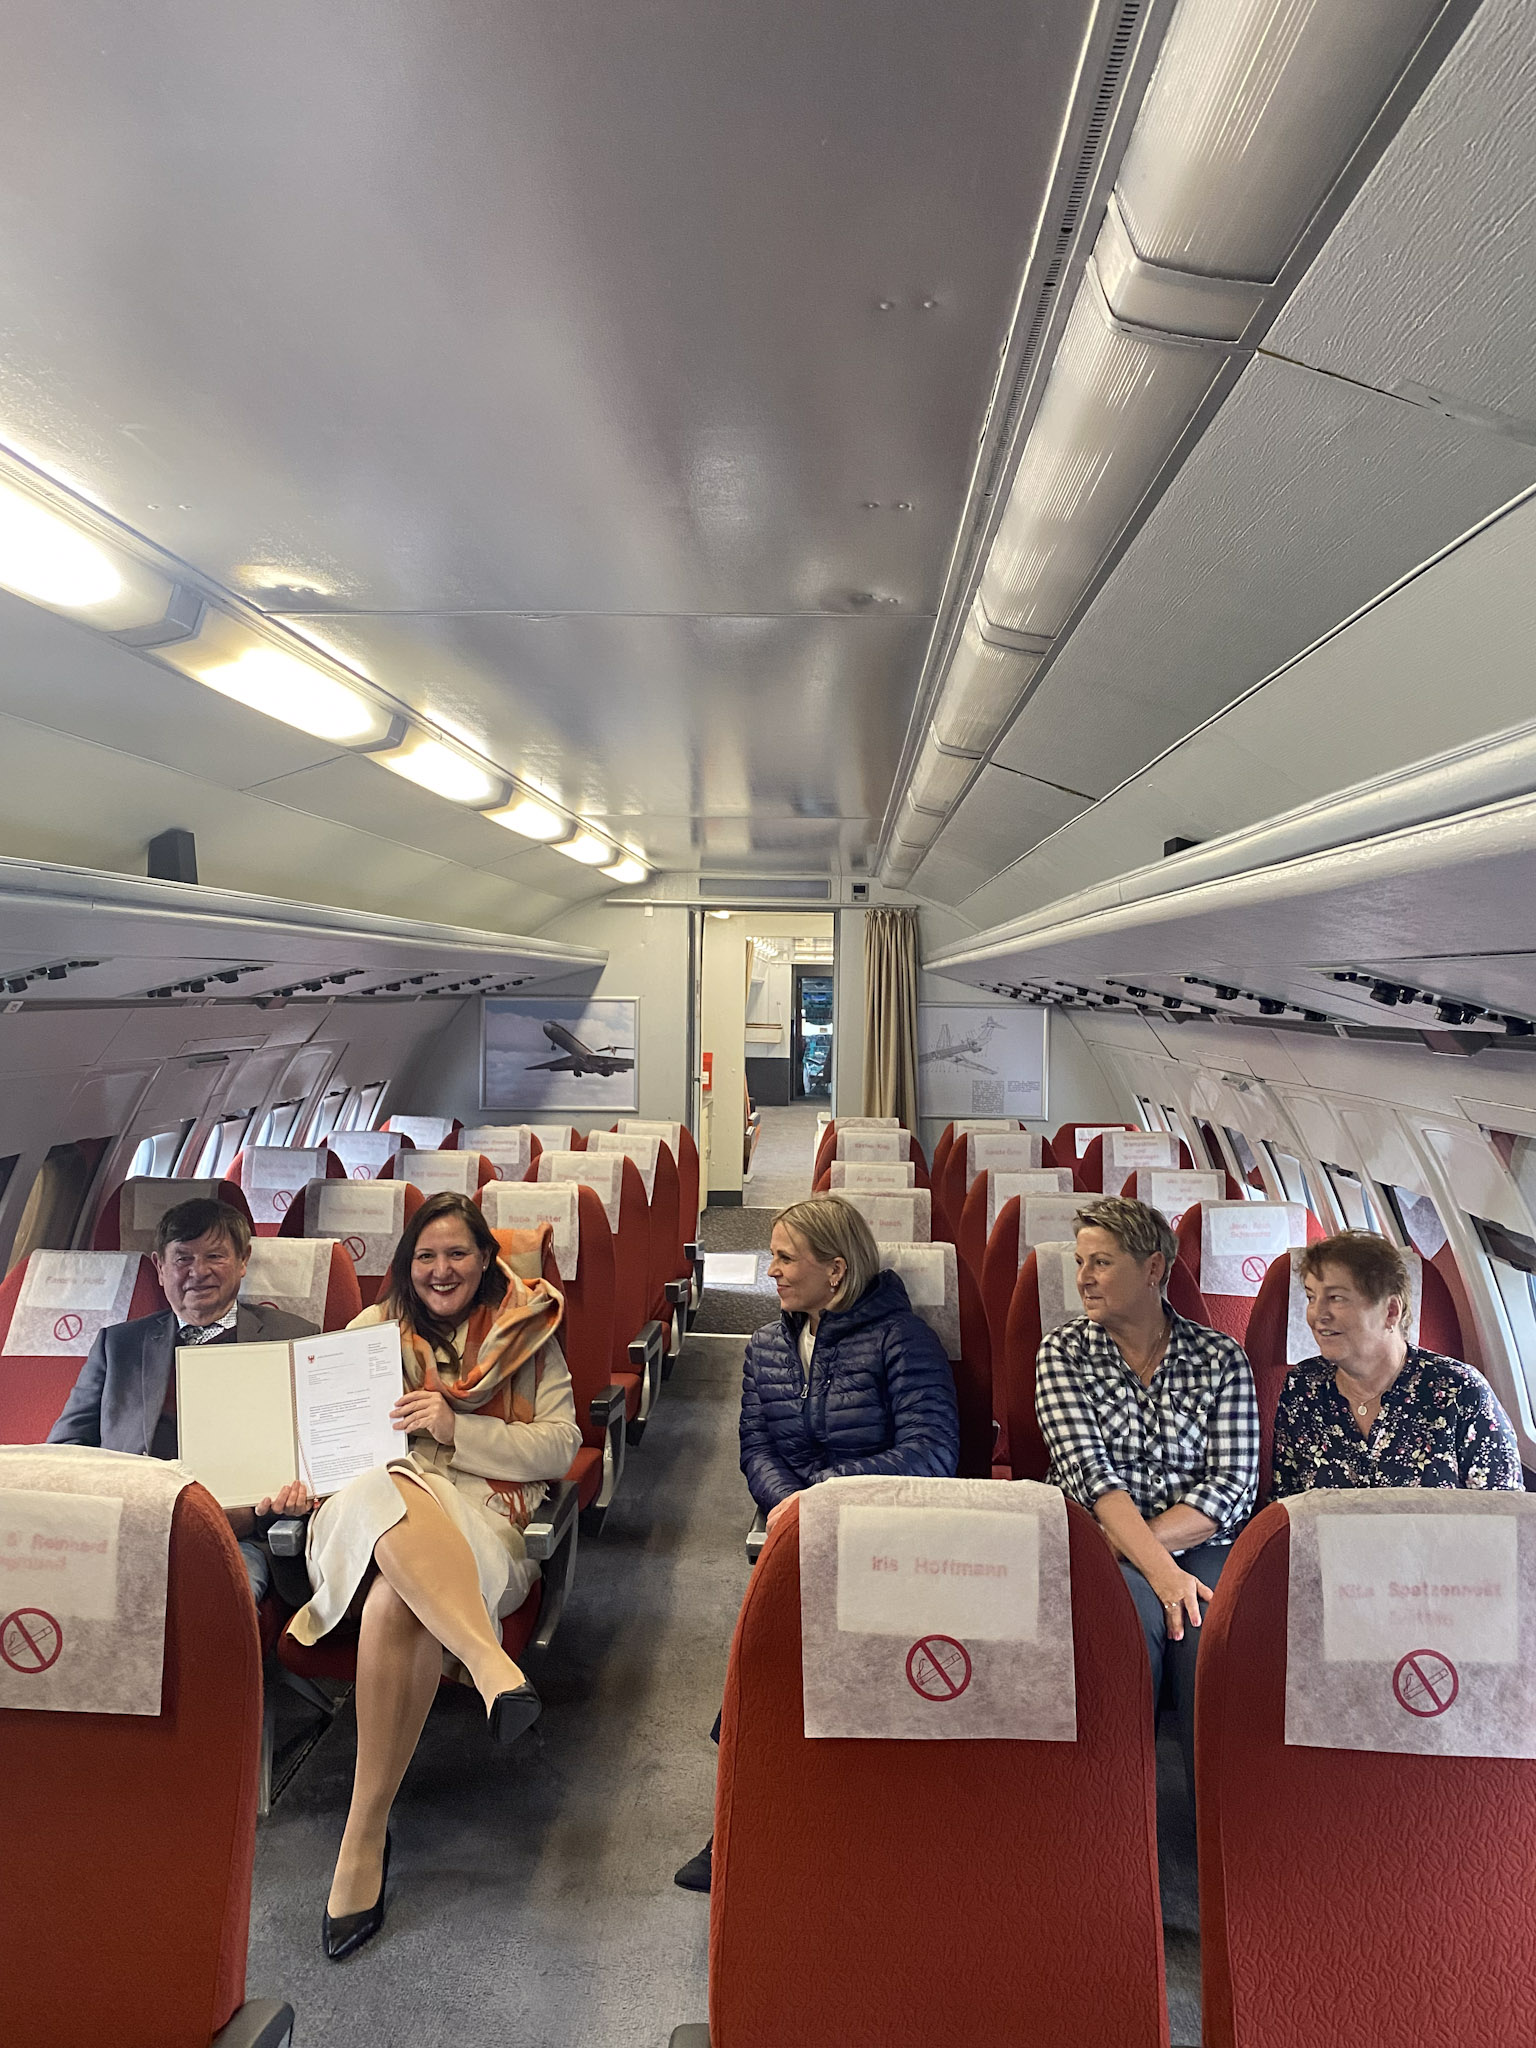 Gezeigt wird auf dem Foto Ministerin Schüle, die im Flugzeug "Lady Agnes" mit anderen Akteuren sitzt